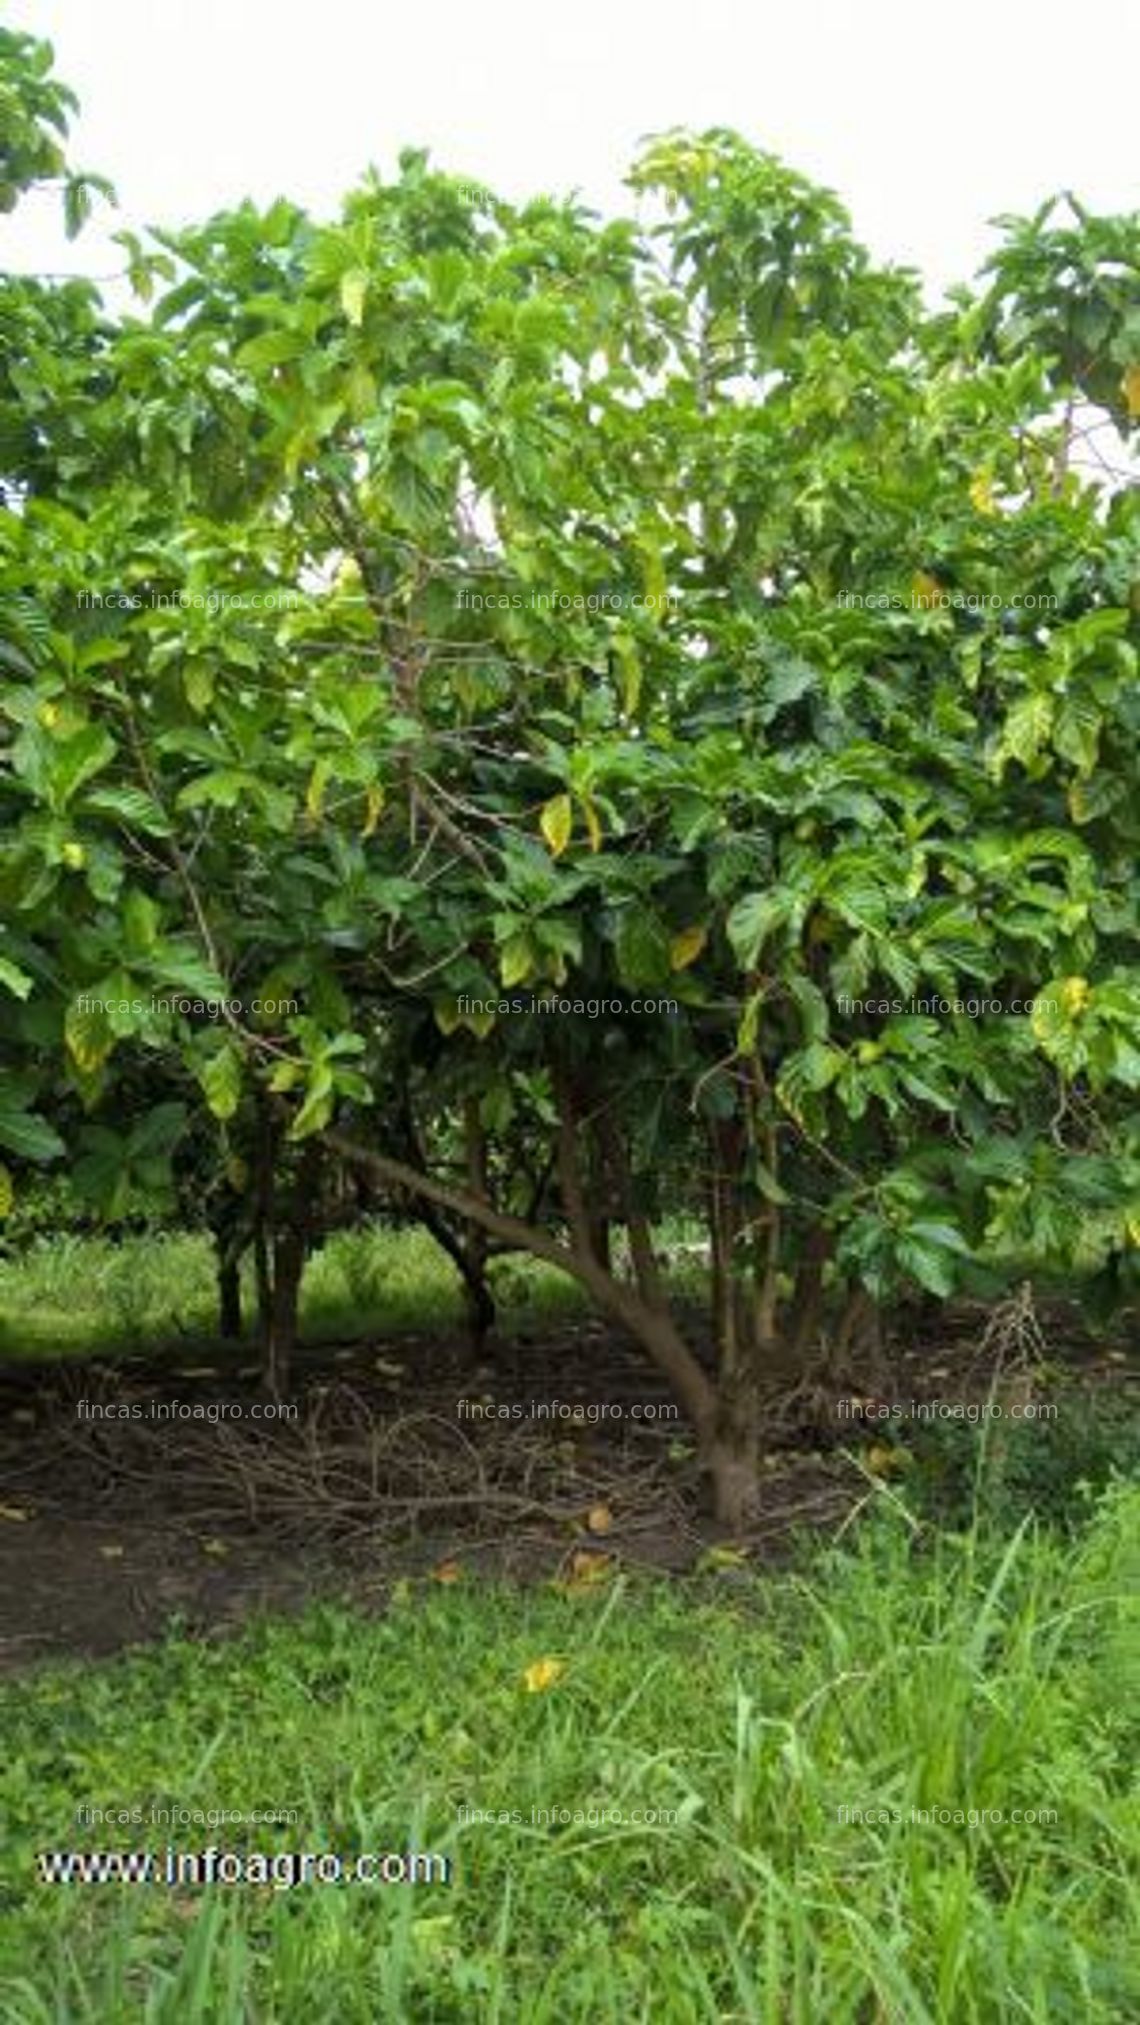 Fotos de En venta  noni - 51 hectareas de cultivo de noni. certificacion organica desde 2006. amazonas, peru